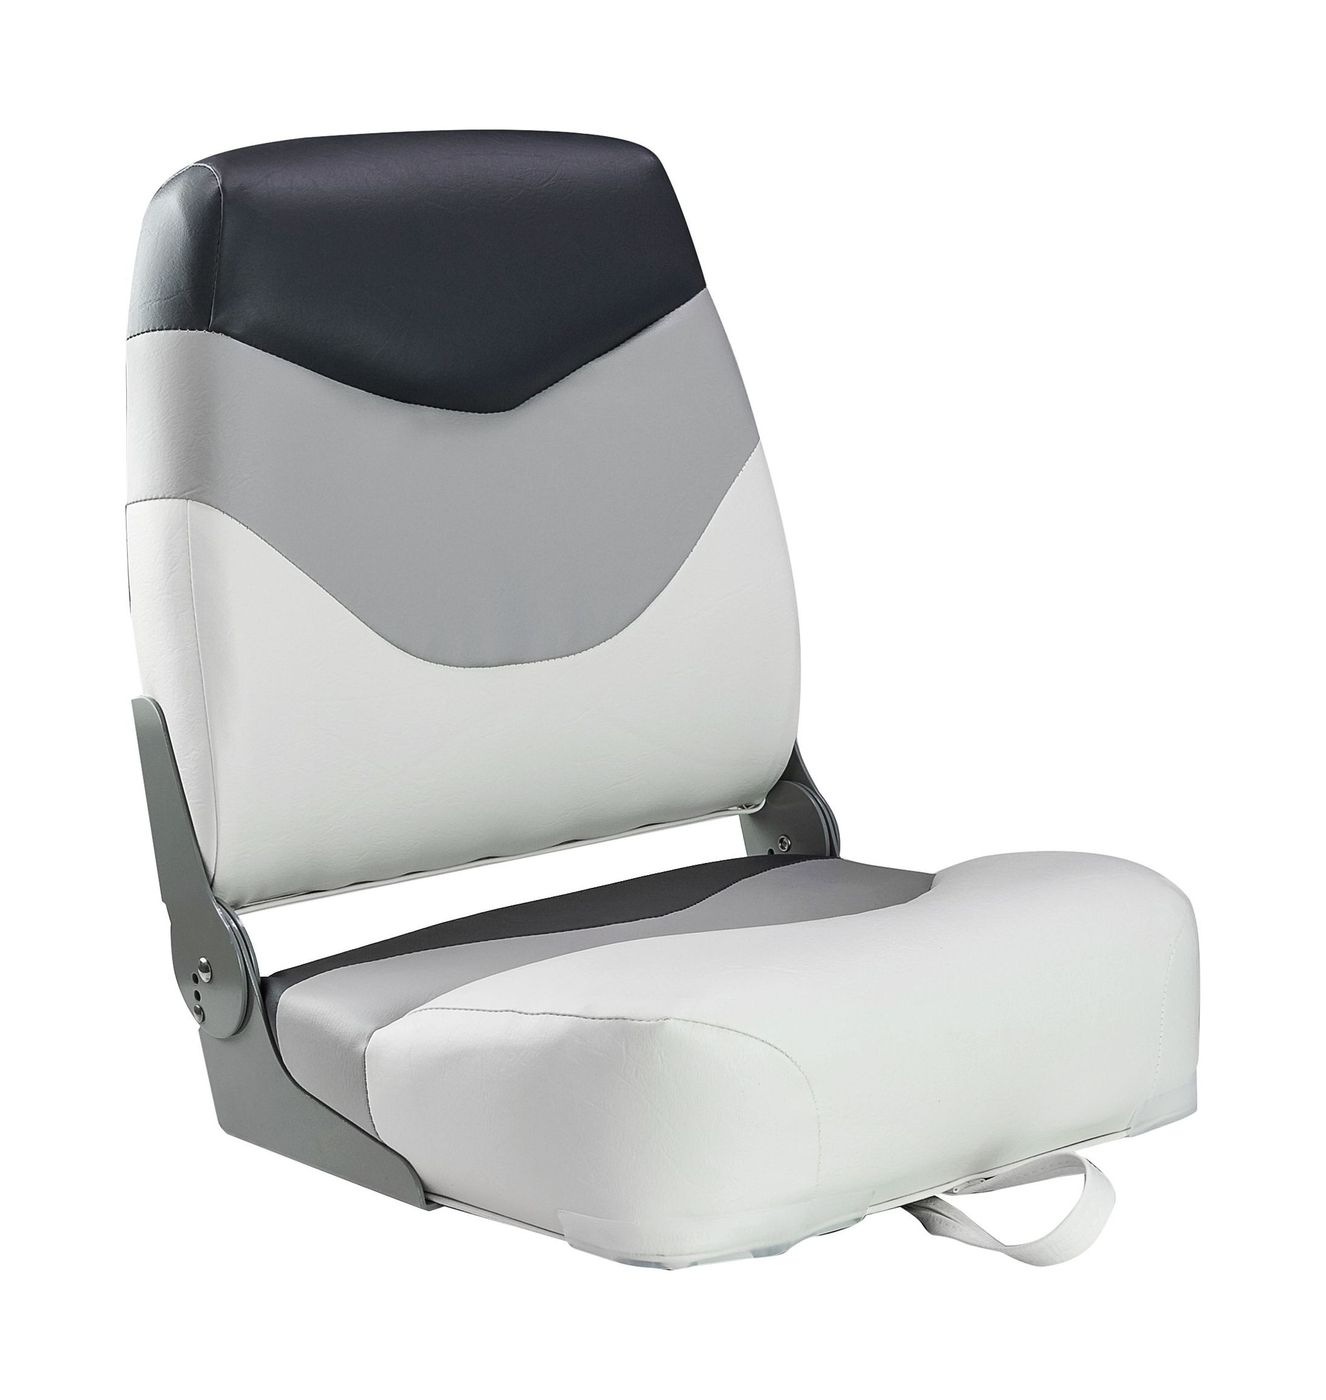 Кресло мягкое складное Premium, обивка винил, цвет белый/серый/угольный, Marine Rocket 75128WGC-MR